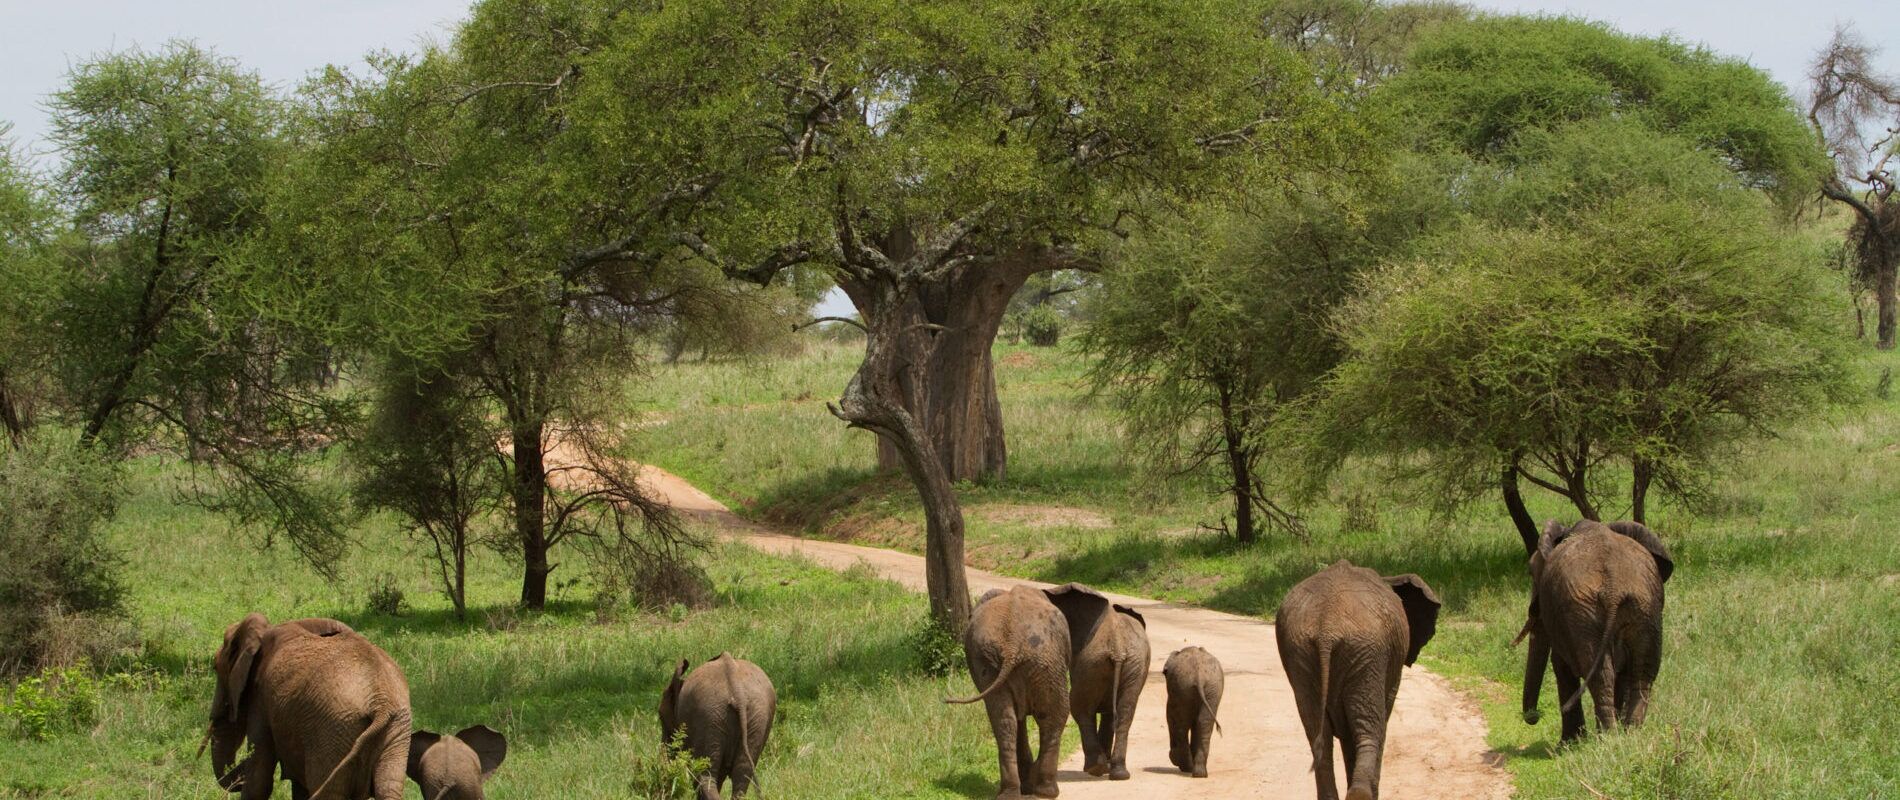 Elefantenherde mit Elefantenbaby von hinten auf einem Weg mit grüner Wiese und Bäumen